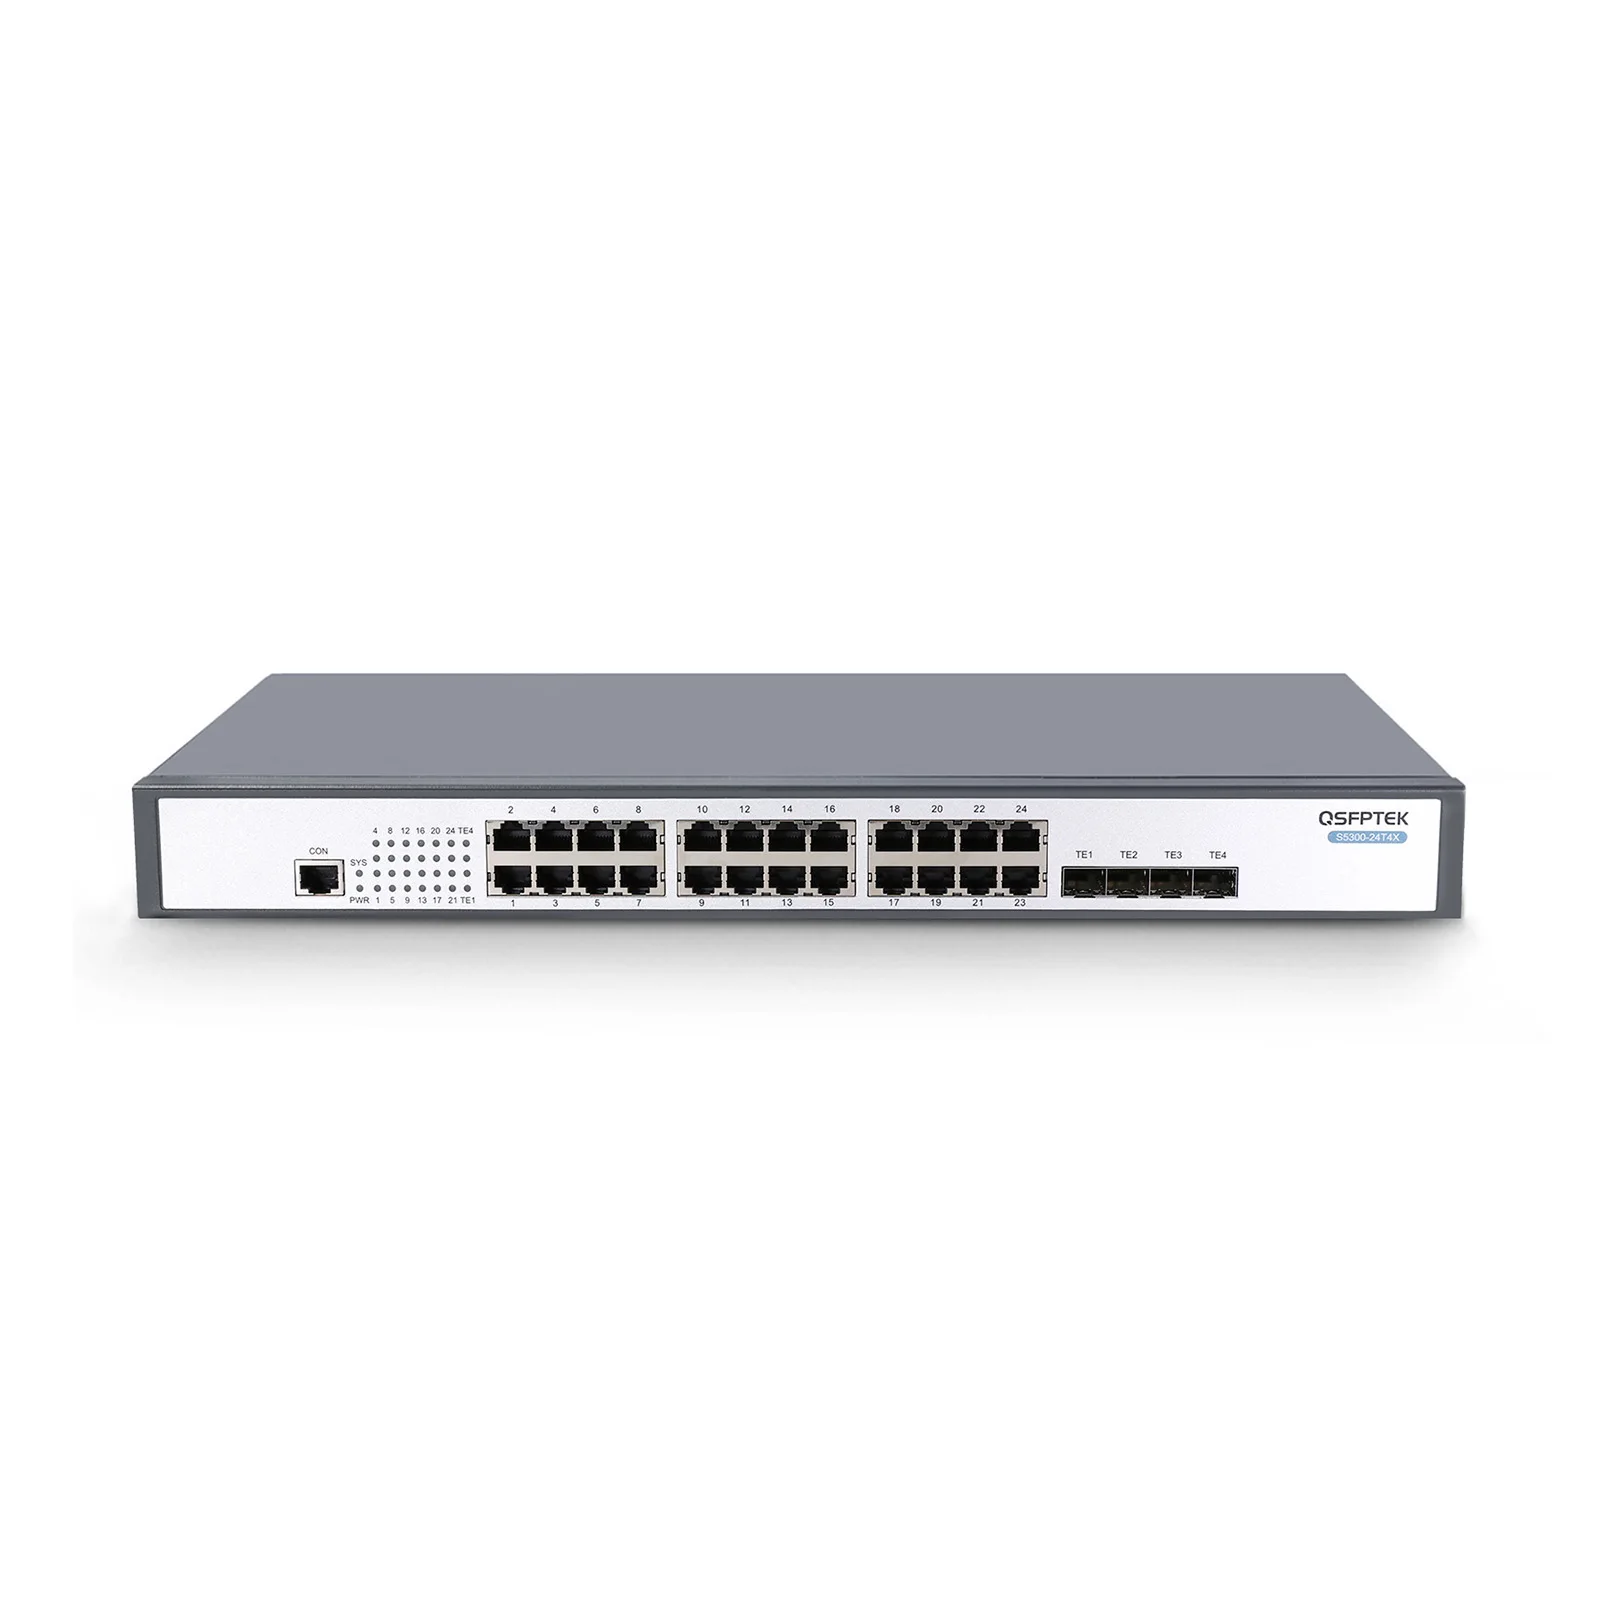 Industrial Gigabit Managed Ethernet PoE Switch, 24 Ports PoE+, 4 Ports  Combo Uplink